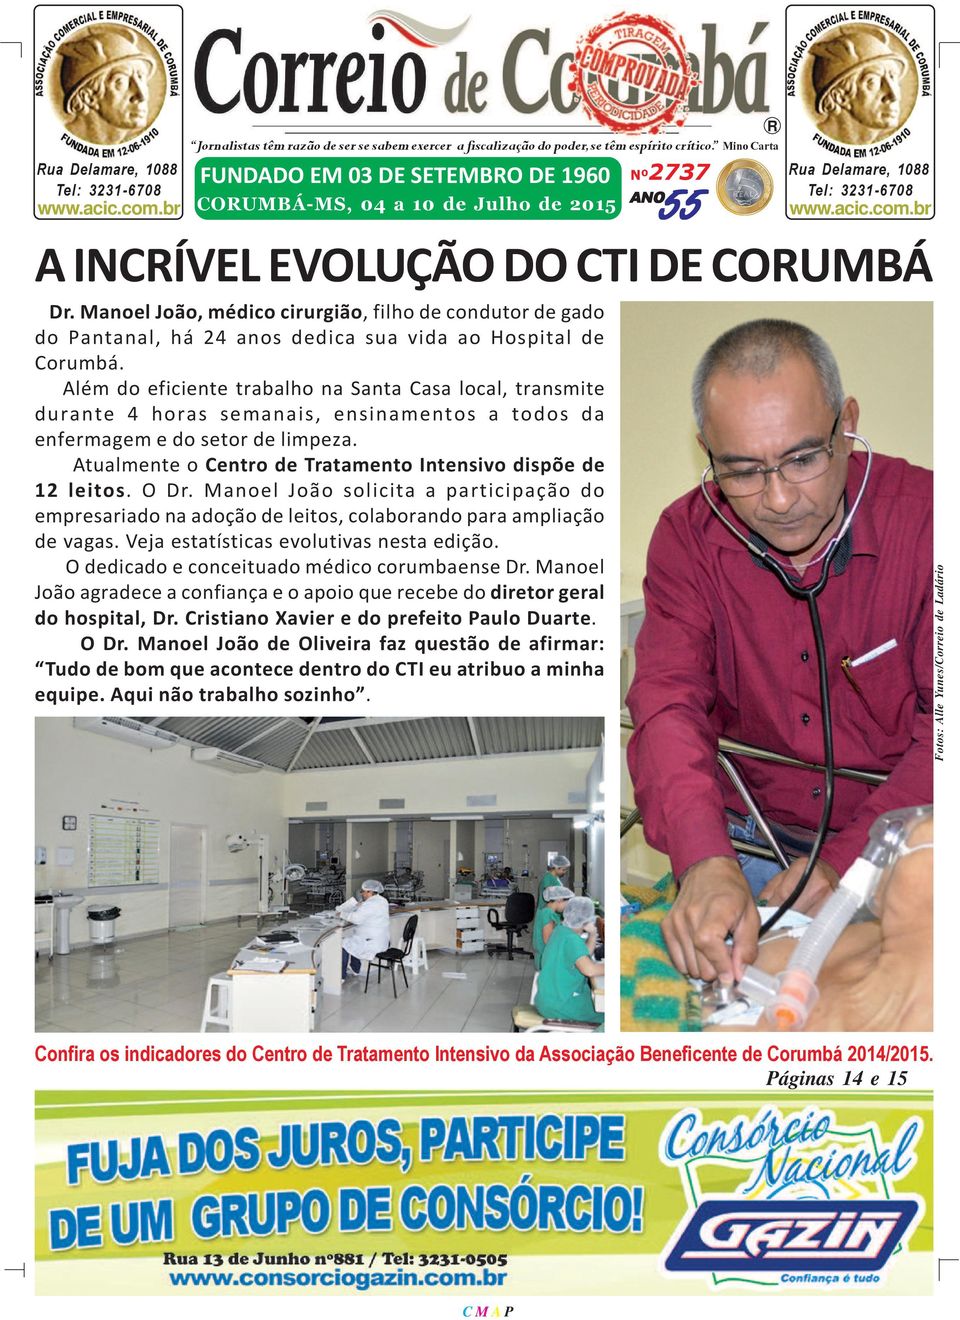 Manoel João, médico cirurgião, filho de condutor de gado do Pantanal, há 24 anos dedica sua vida ao Hospital de Corumbá.